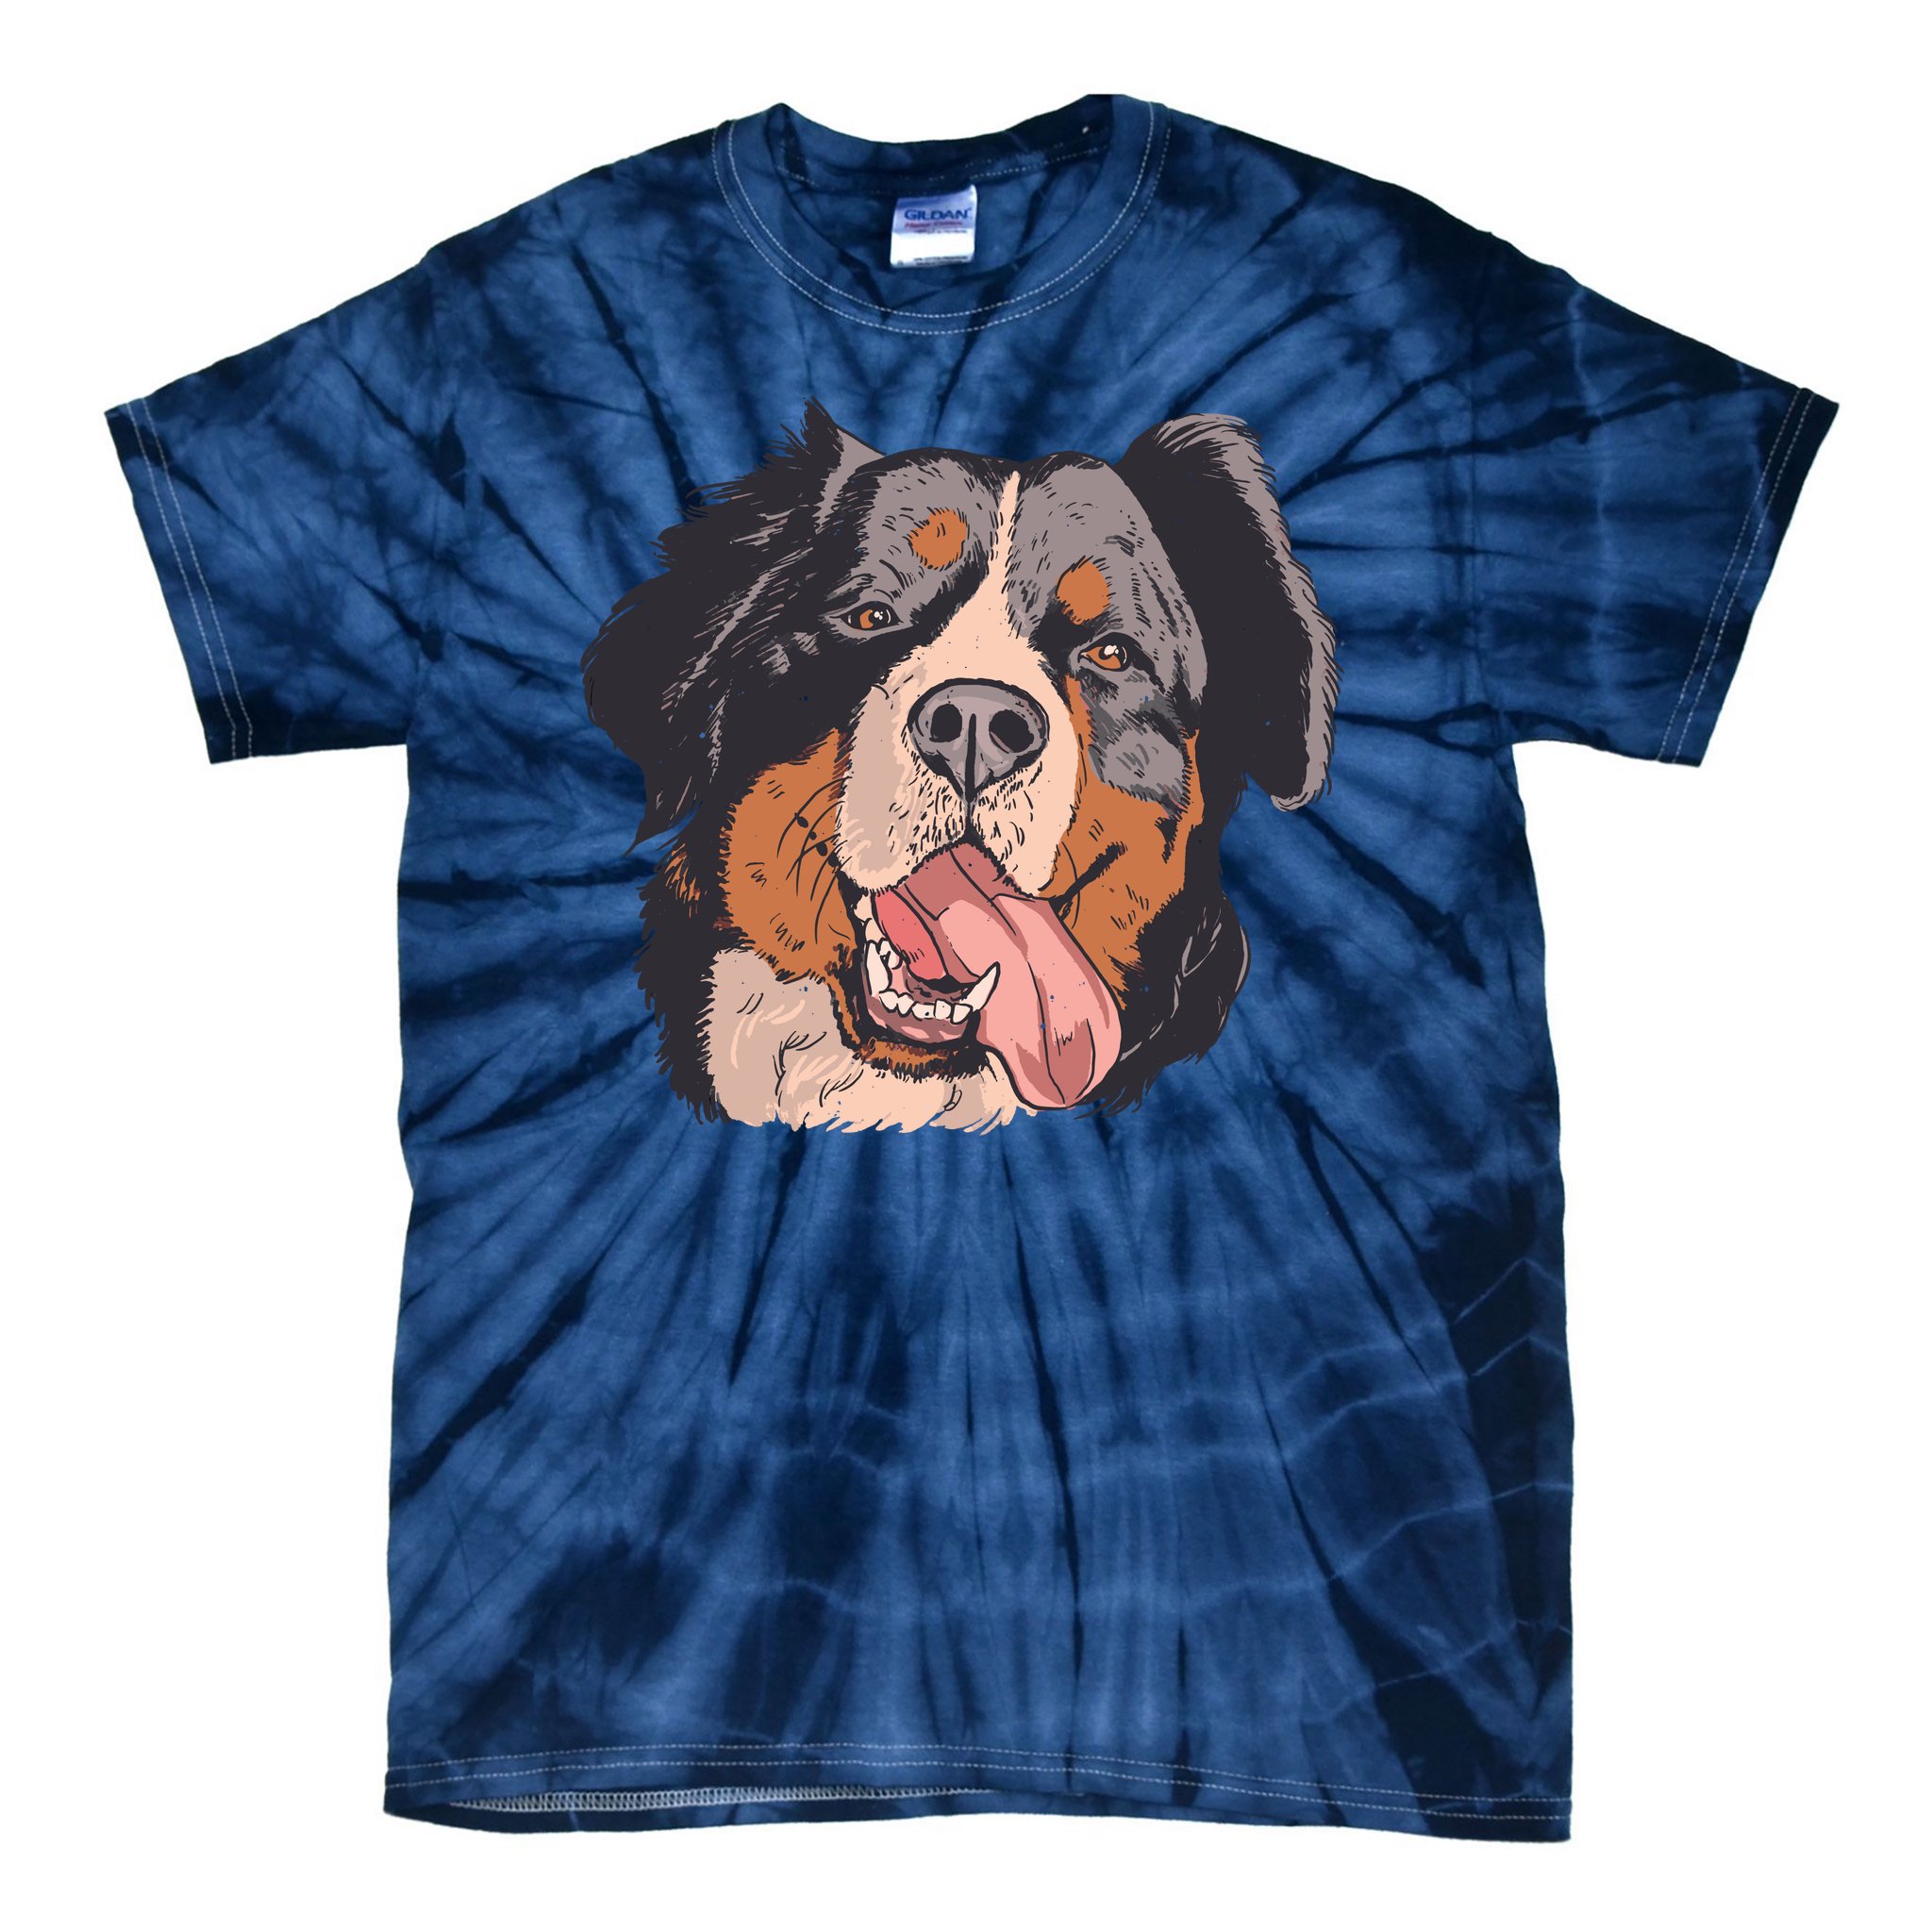 The Mountain T-Shirt Golden Retriever Puppy Dog Tie Dye Shirt